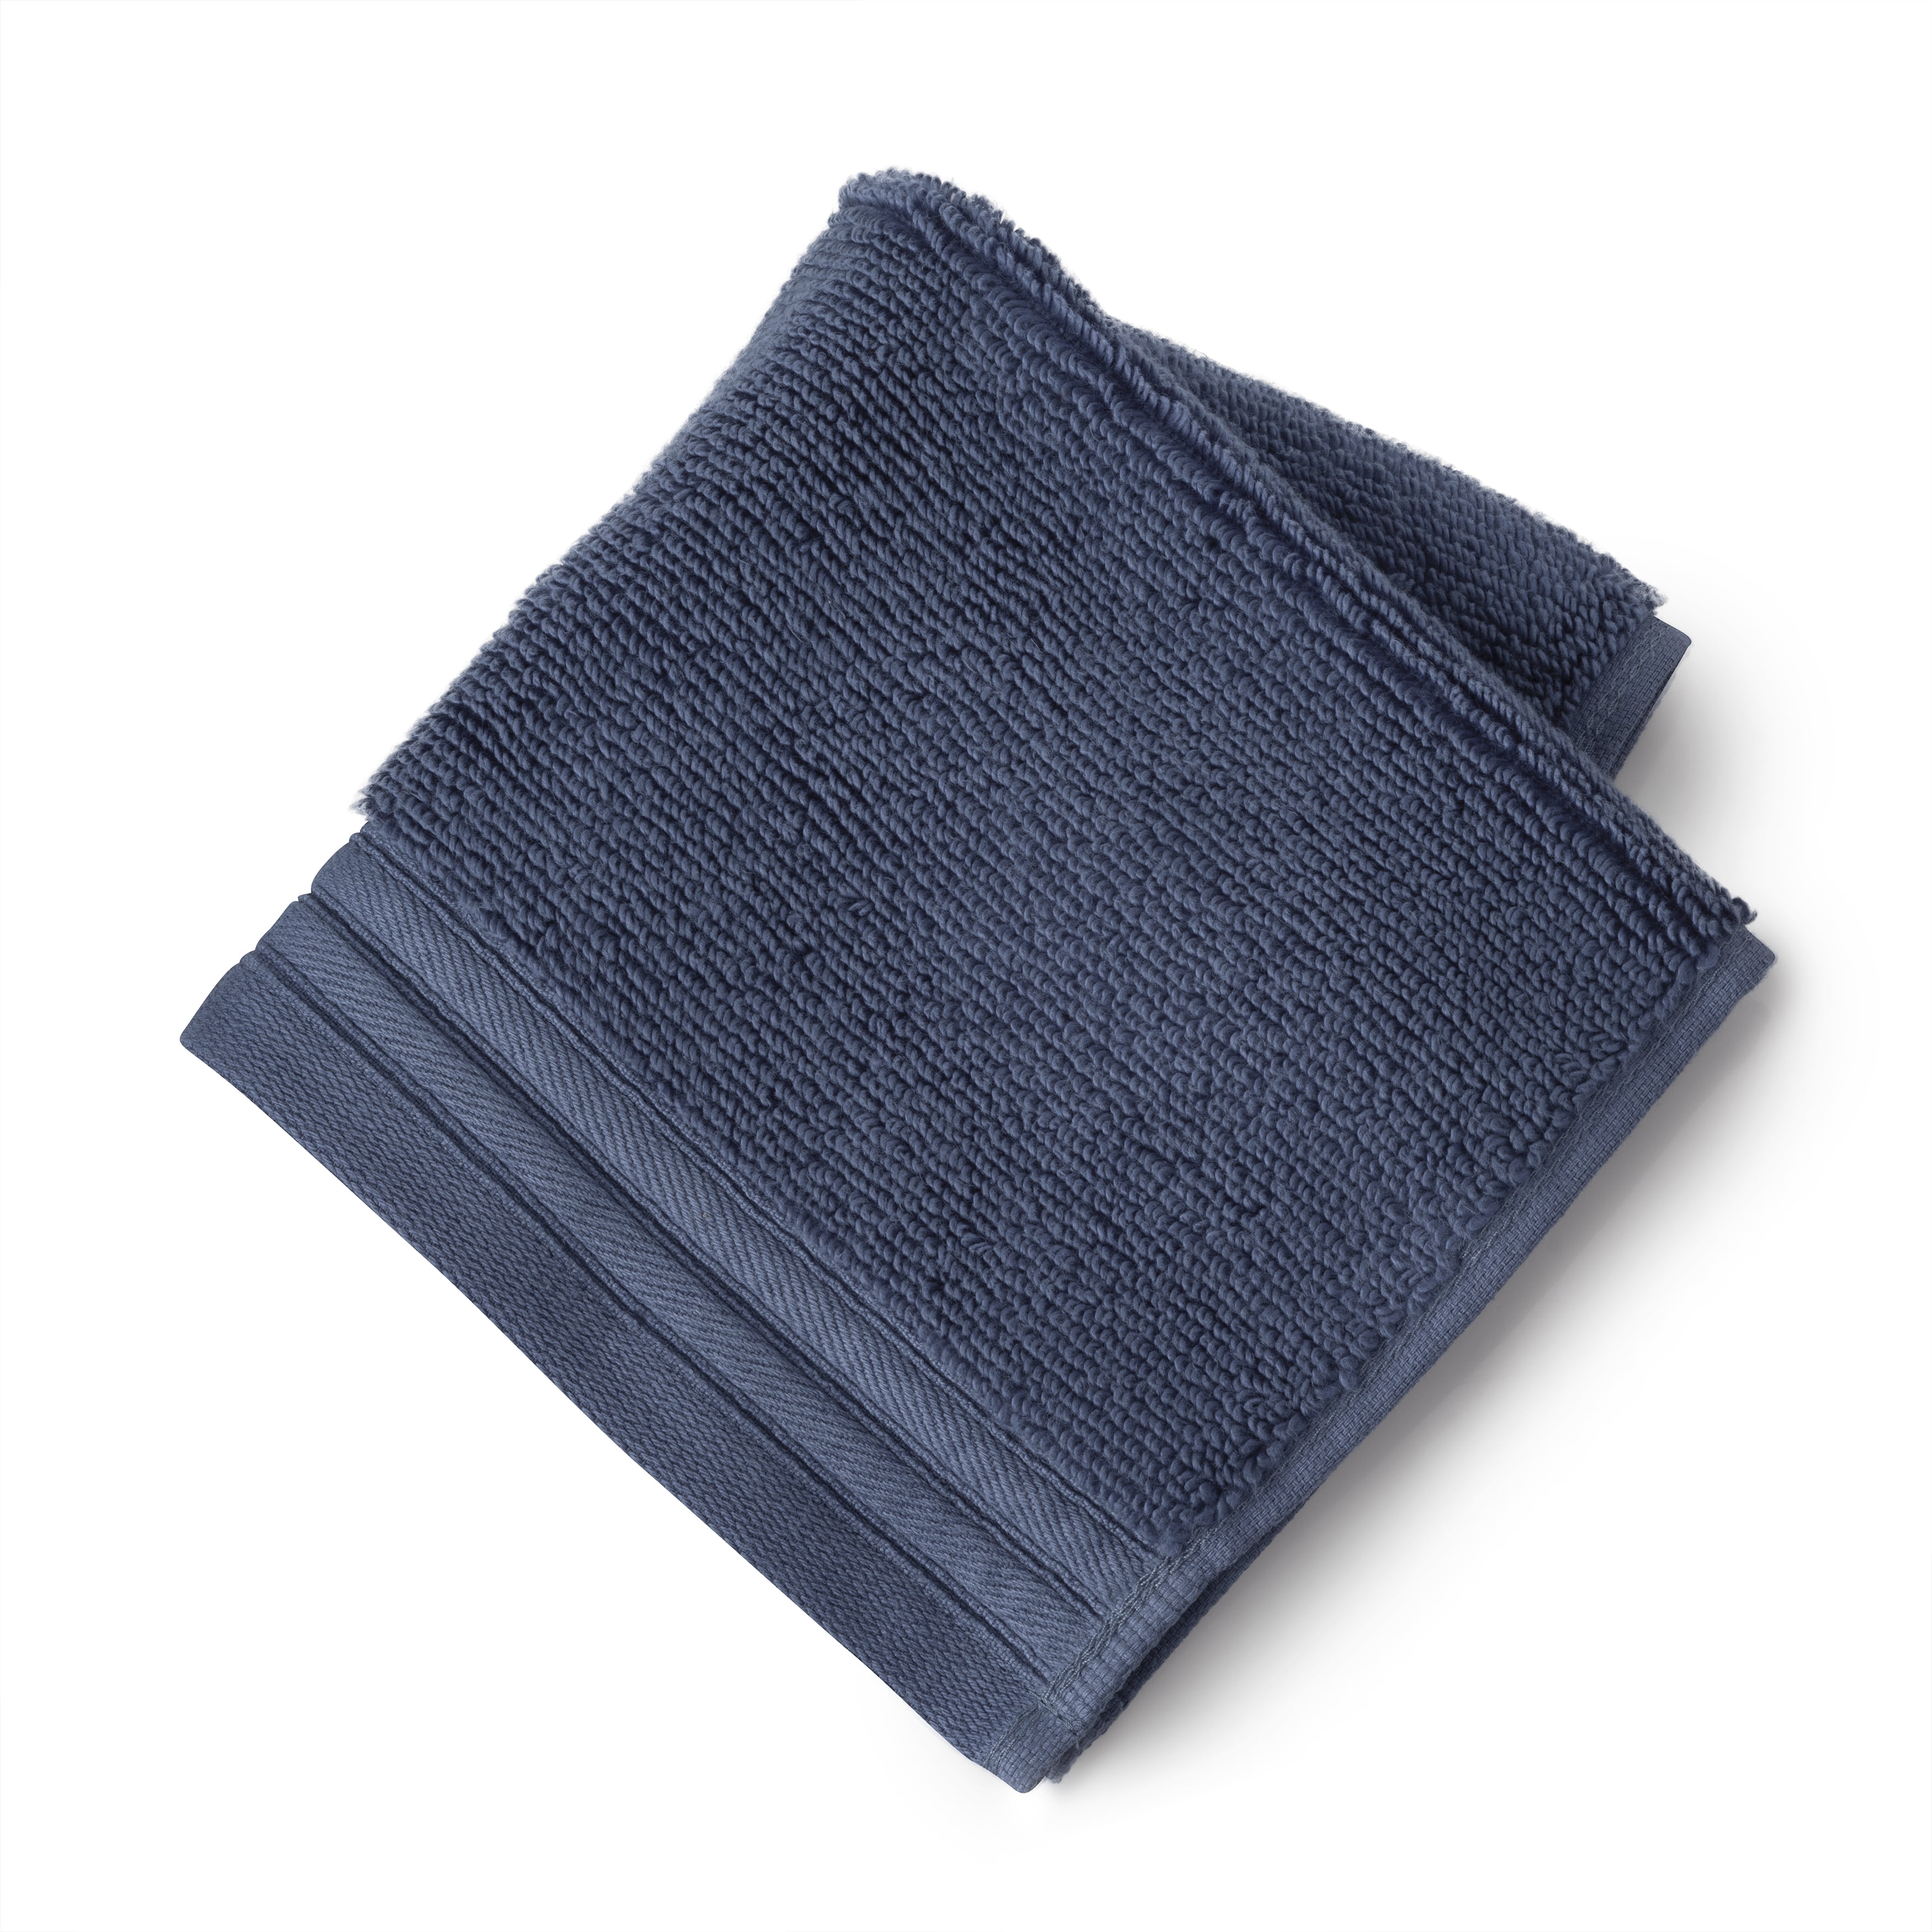 Liz Claiborne Signature Plush Bath Towel Collection, One Size , Blue